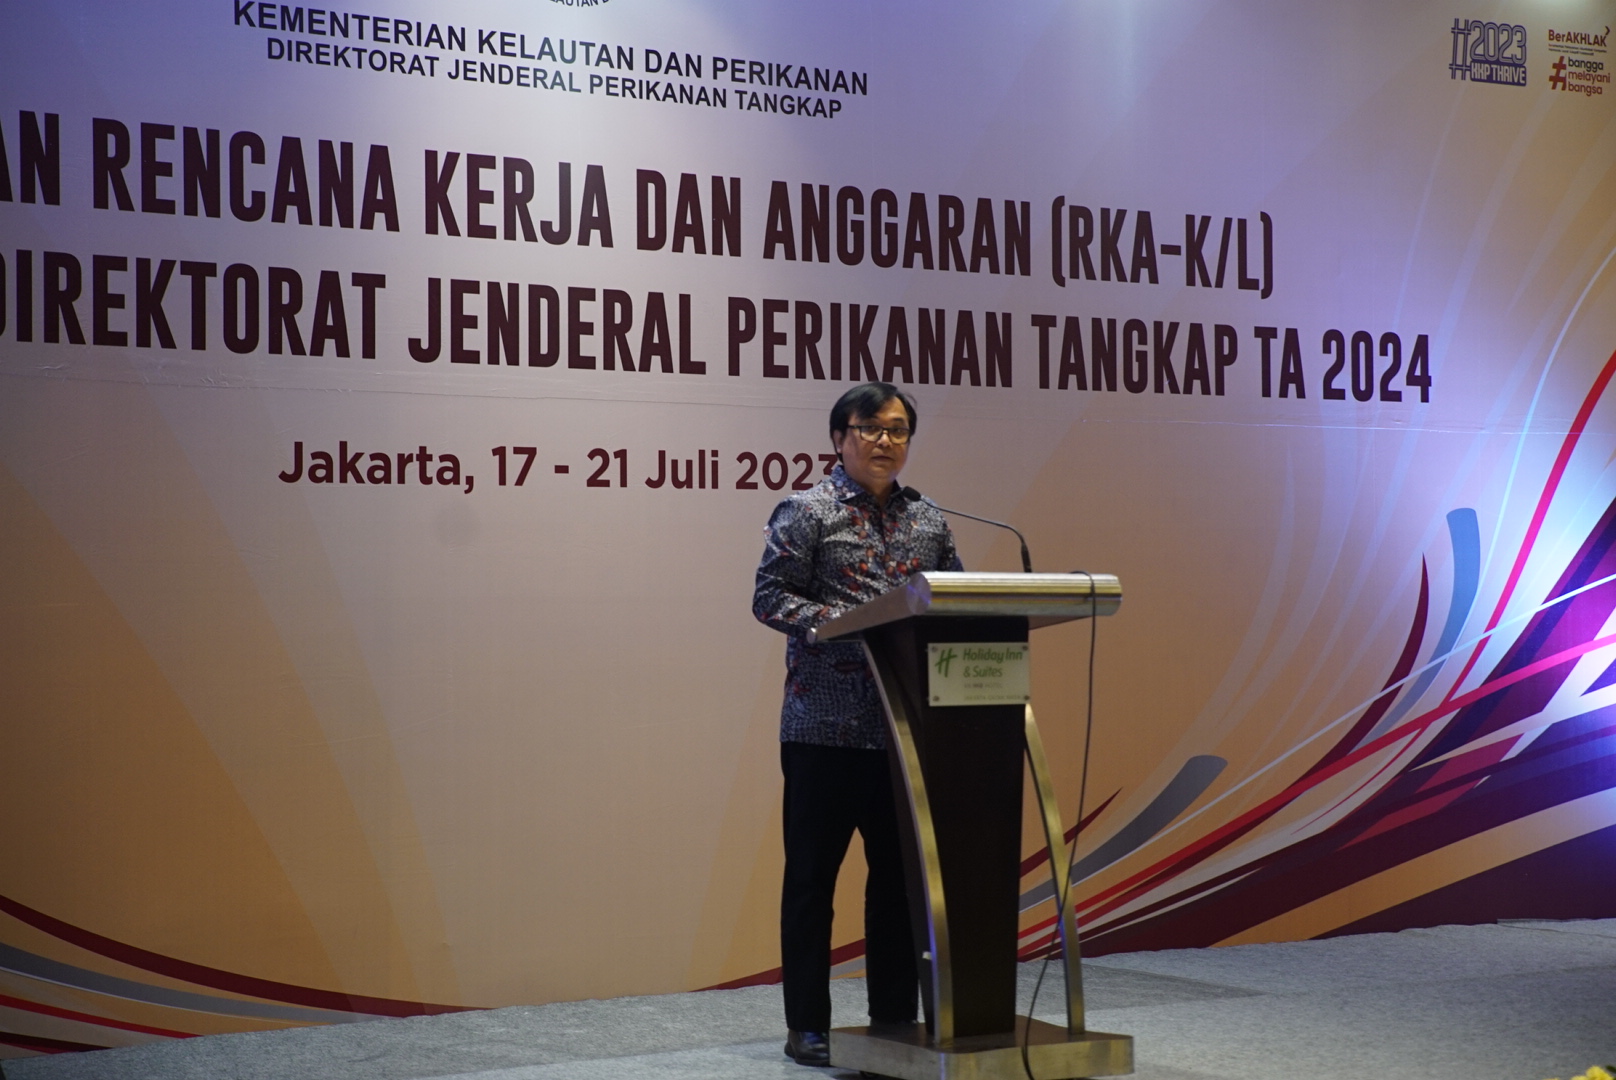 Penyusunan RKA-K/L Pagu Anggaran Direktorat Jenderal Perikanan Tangkap TA 2024